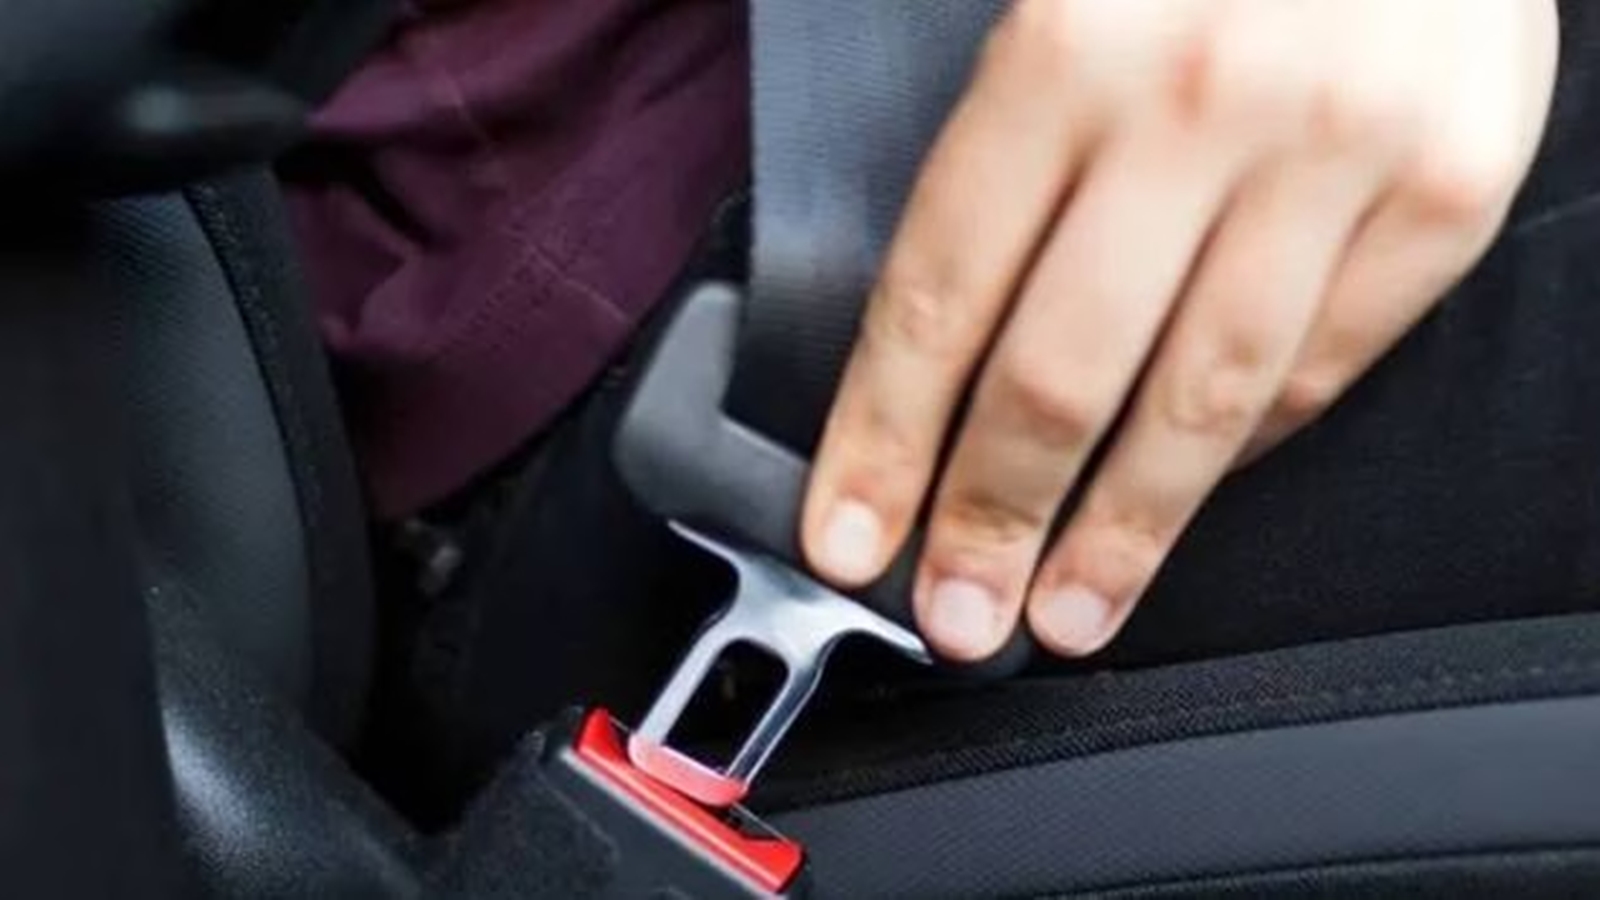 Punjab makes rear seat belts mandatory